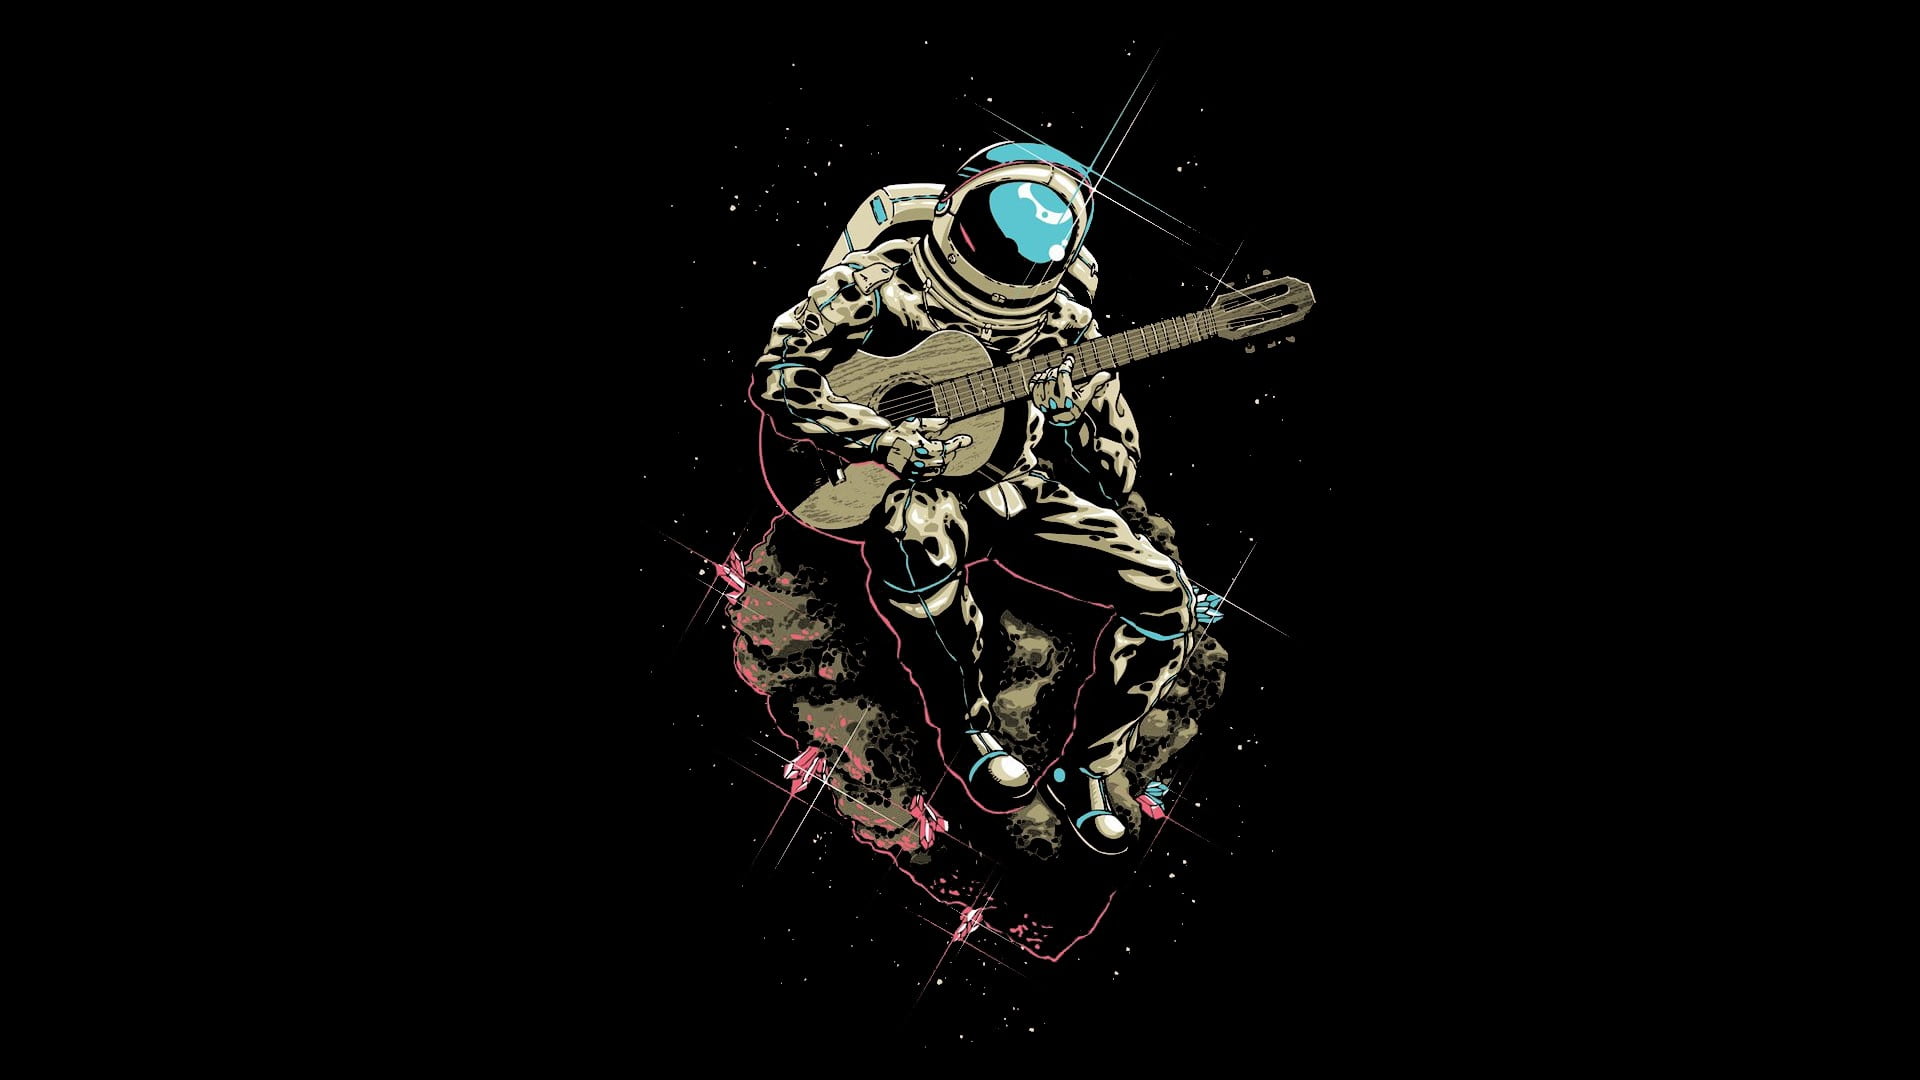 man holding guitar digital wallpaper, space, astronaut, musician